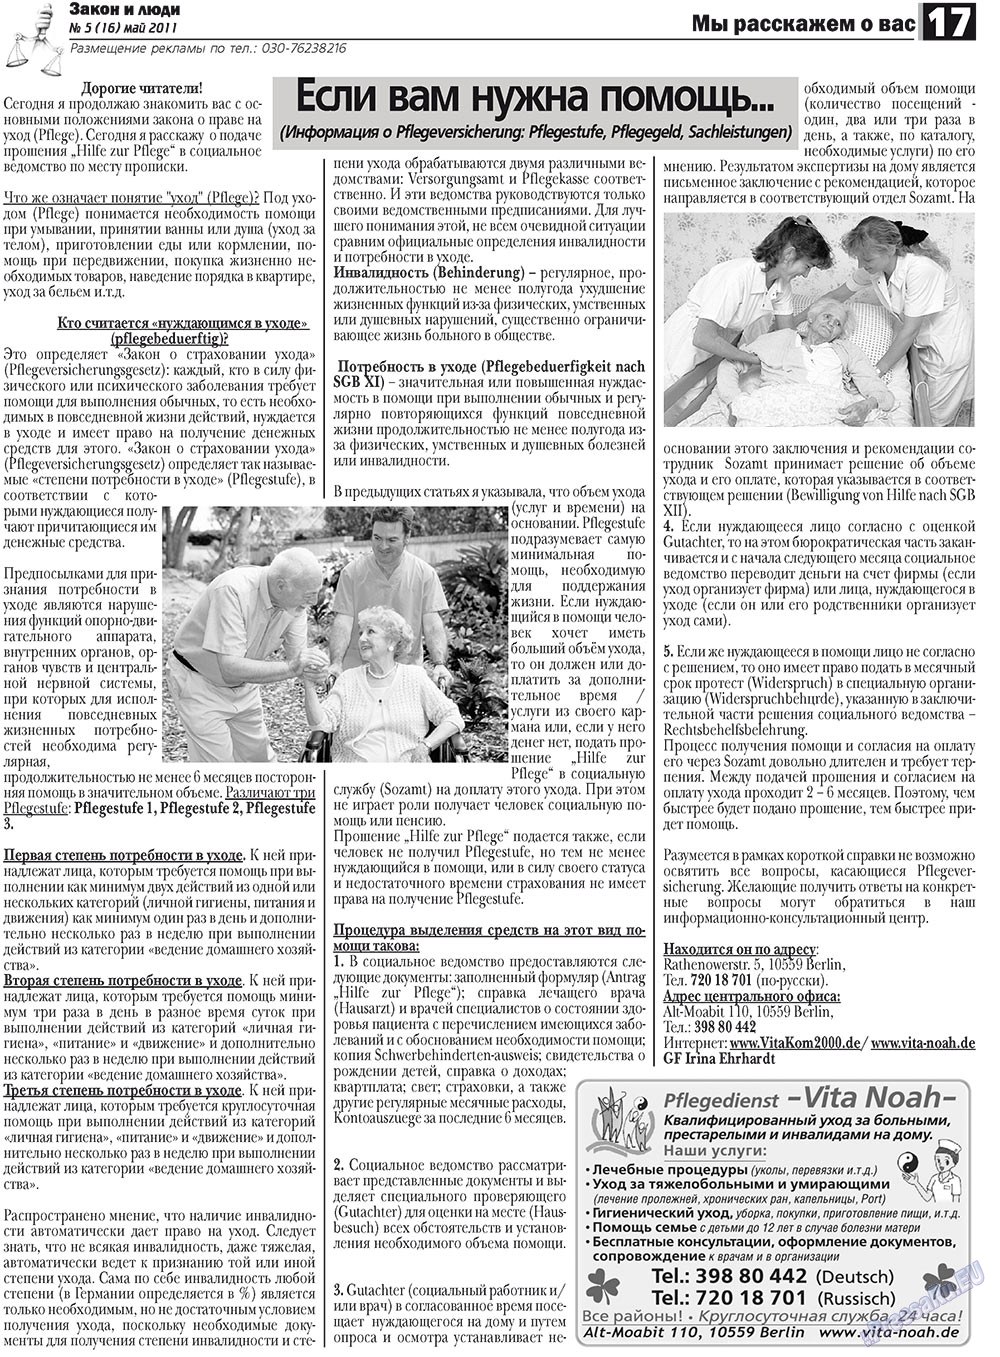 Закон и люди, газета. 2011 №5 стр.17